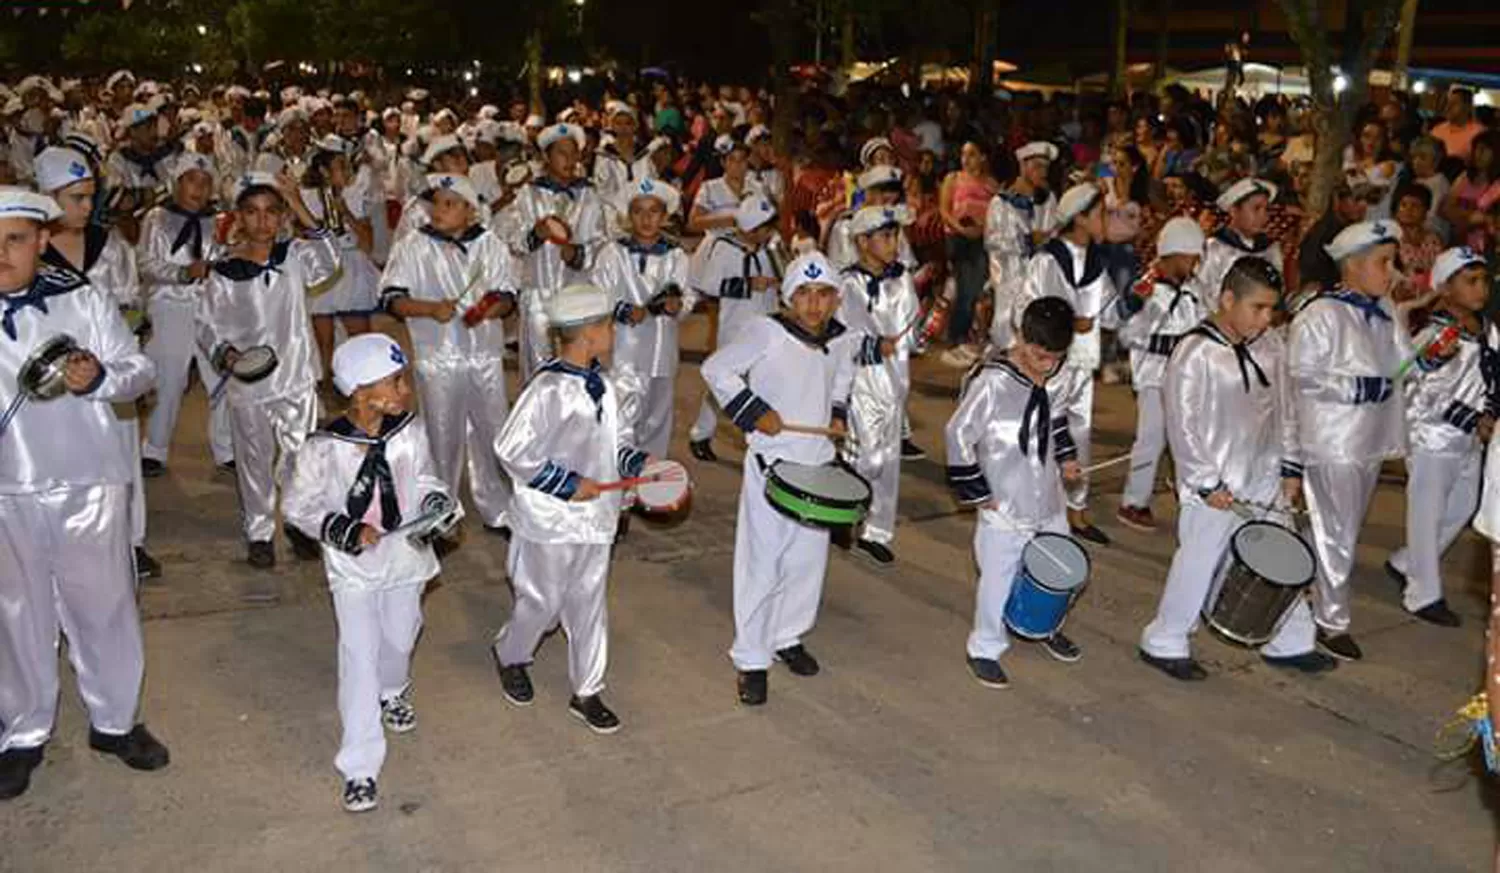 Una comparsa tucumana homenajeó a los tripulantes del ARA San Juan en el Carnaval